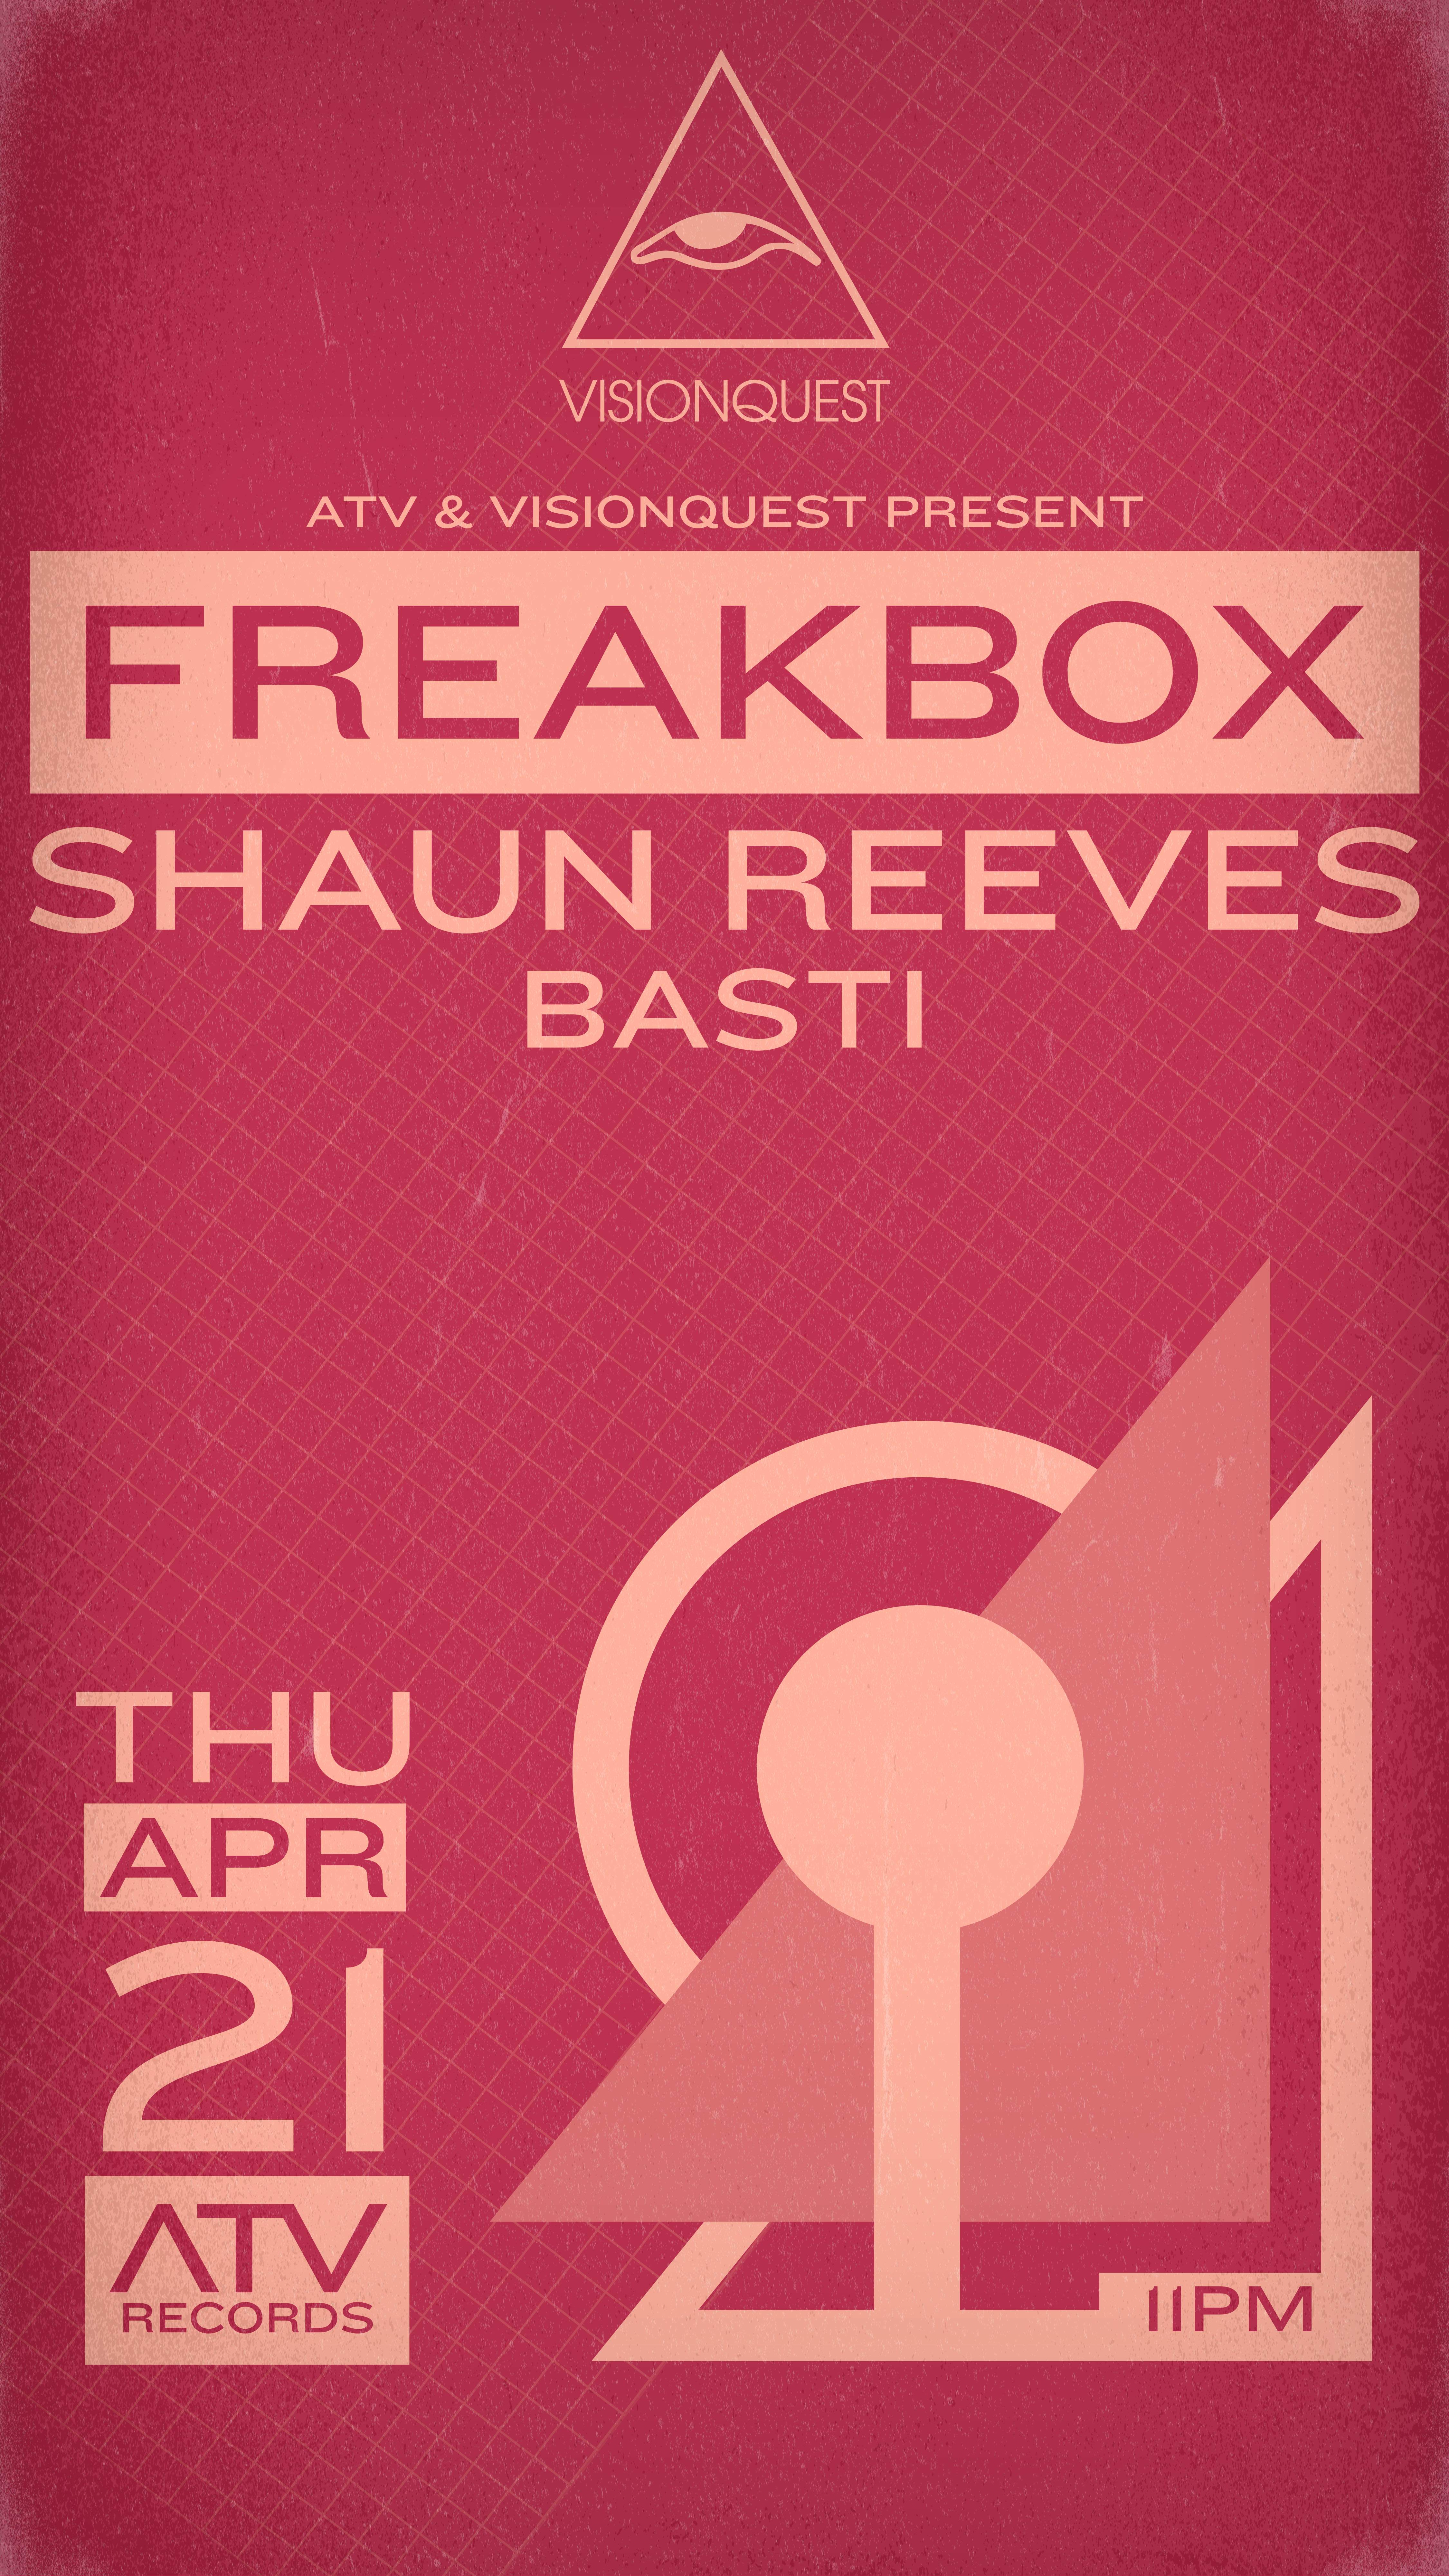 Visionquest presents: Freakbox at ATV with Shaun Reeves & Basti - Página frontal